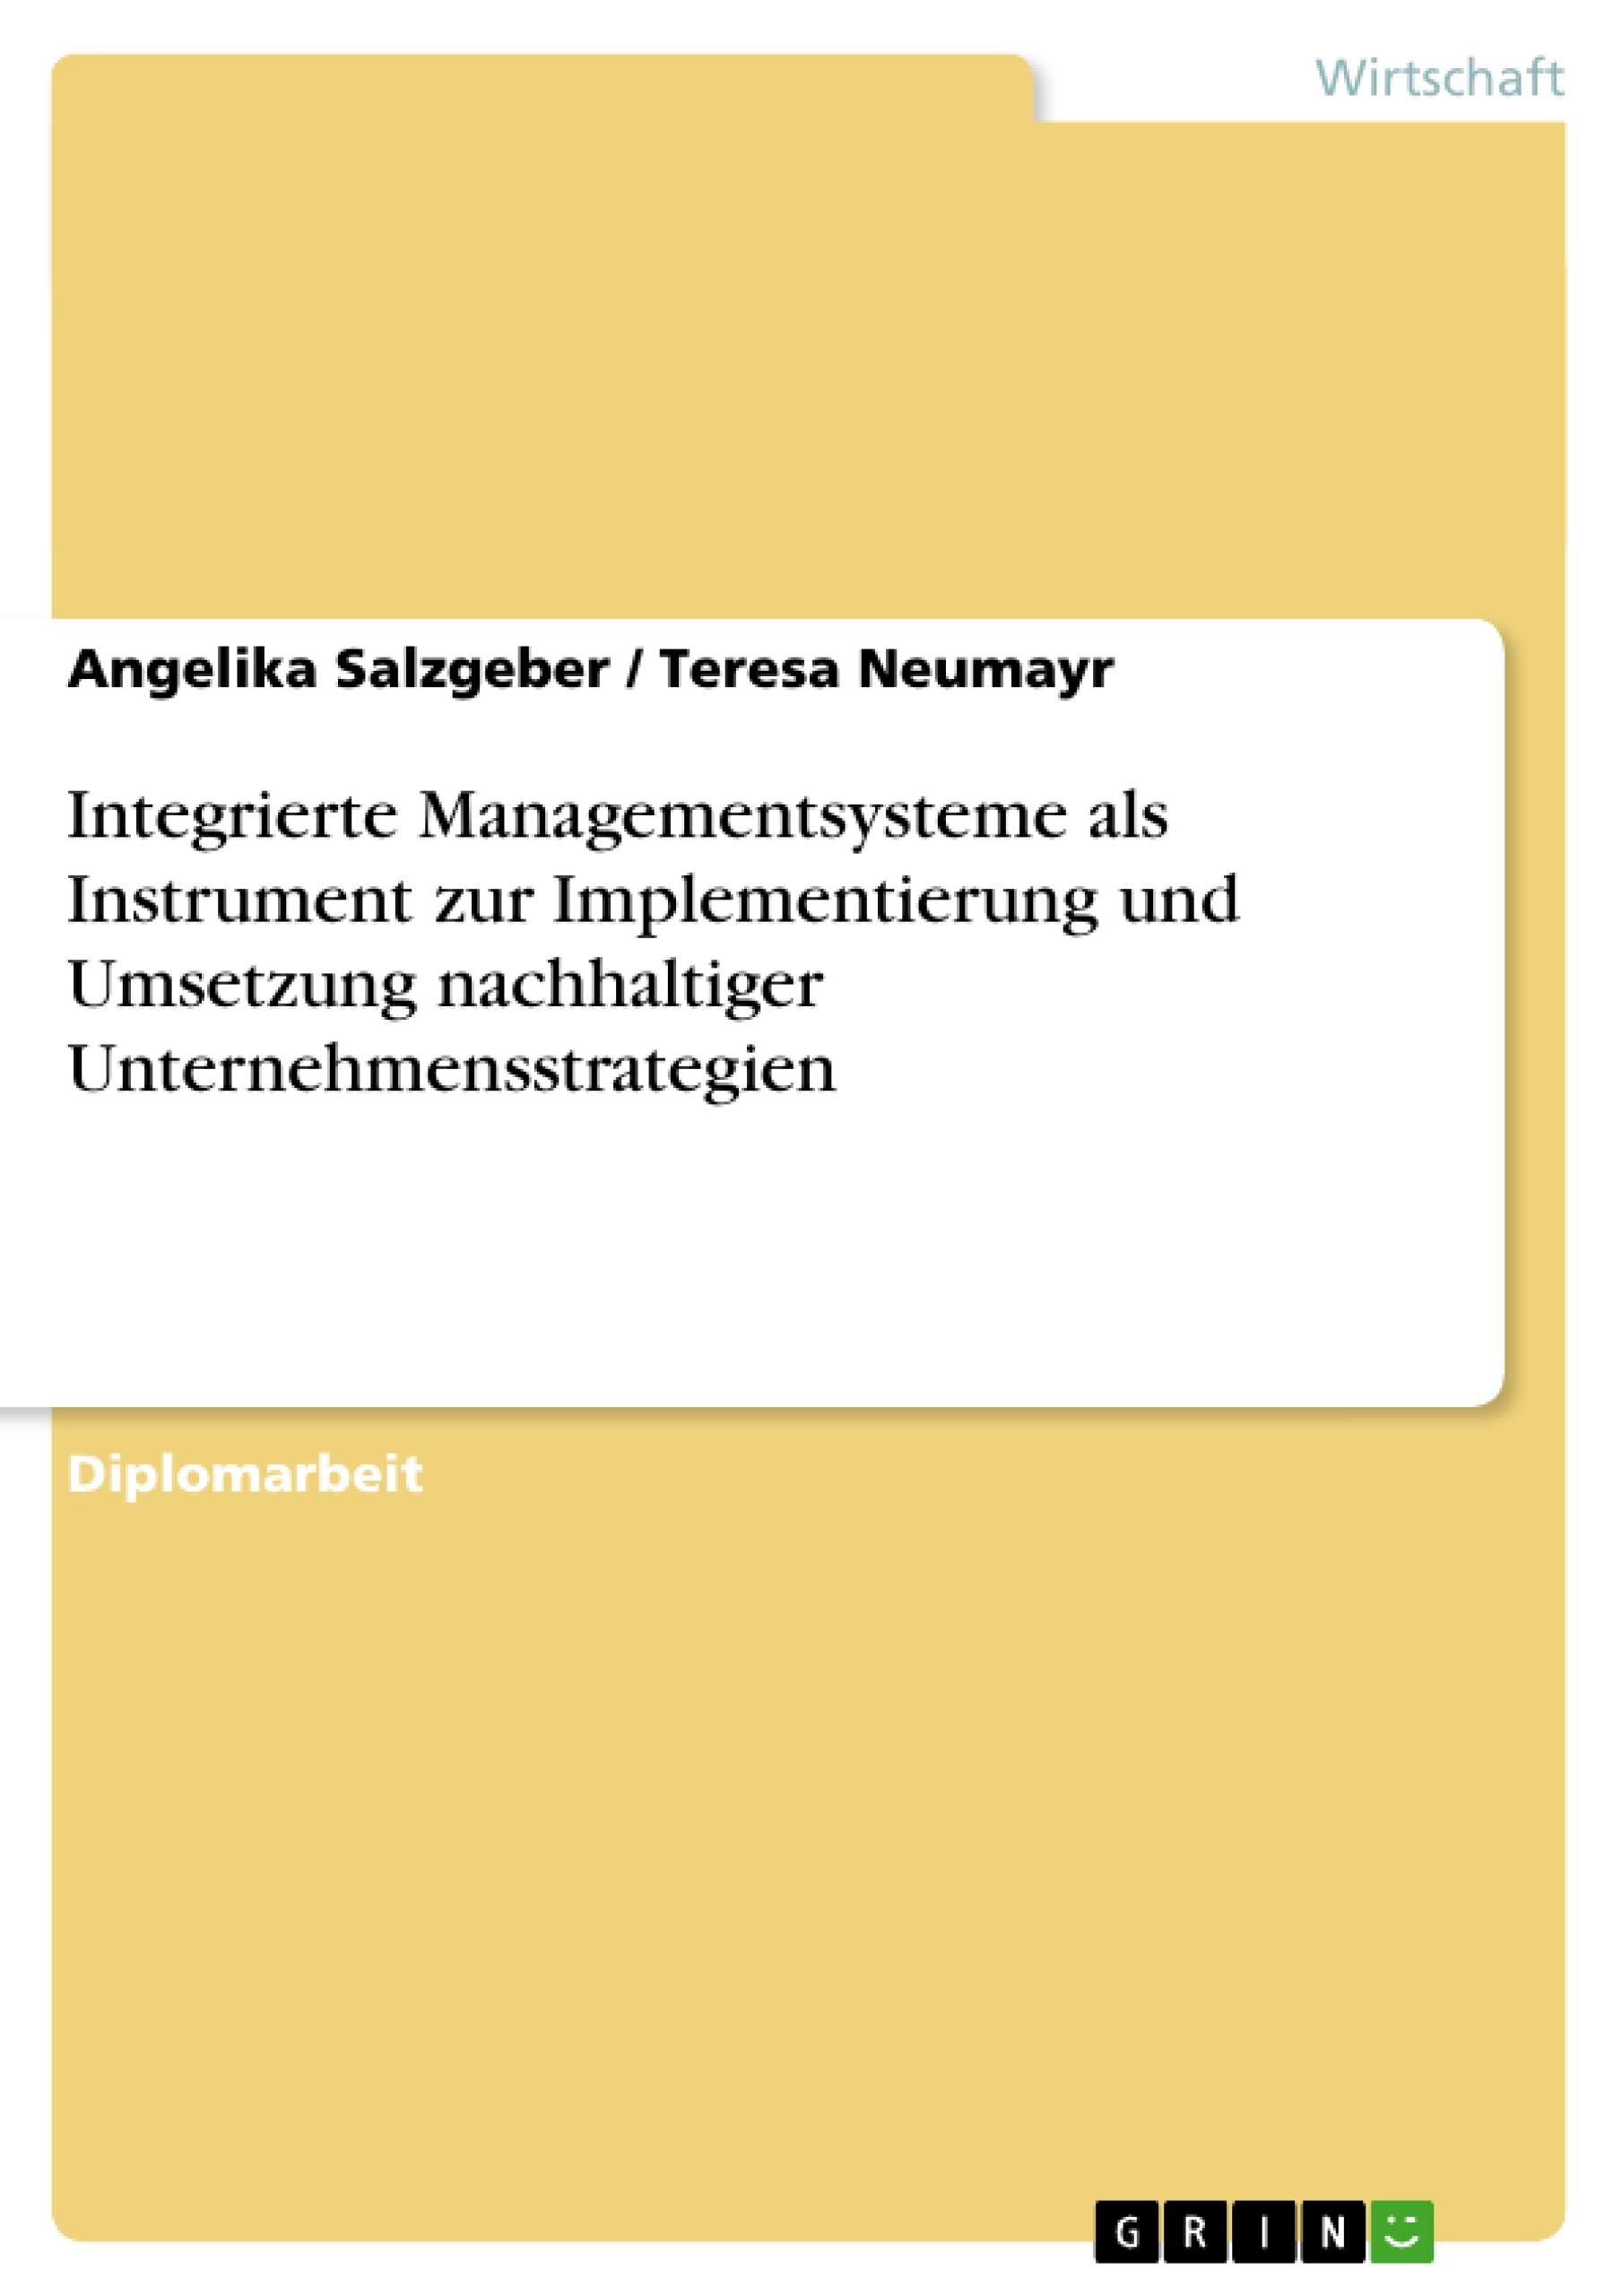 Titel: Integrierte Managementsysteme als Instrument zur Implementierung und Umsetzung nachhaltiger Unternehmensstrategien